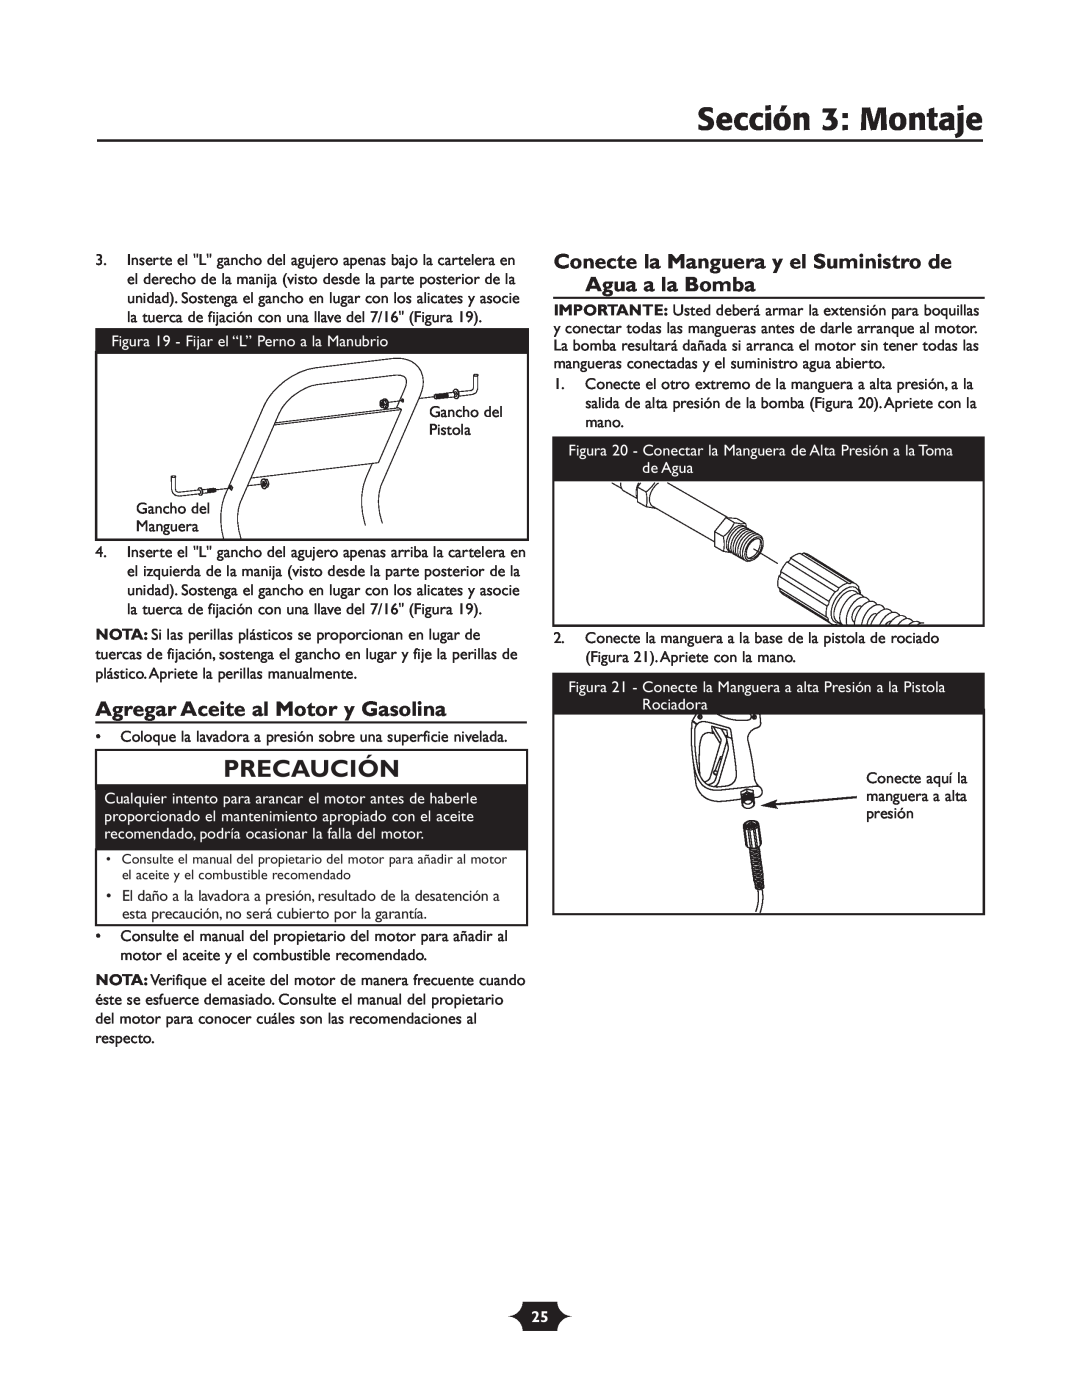 Troy-Bilt 20207 manual Sección 3 Montaje, Agregar Aceite al Motor y Gasolina, Precaución 